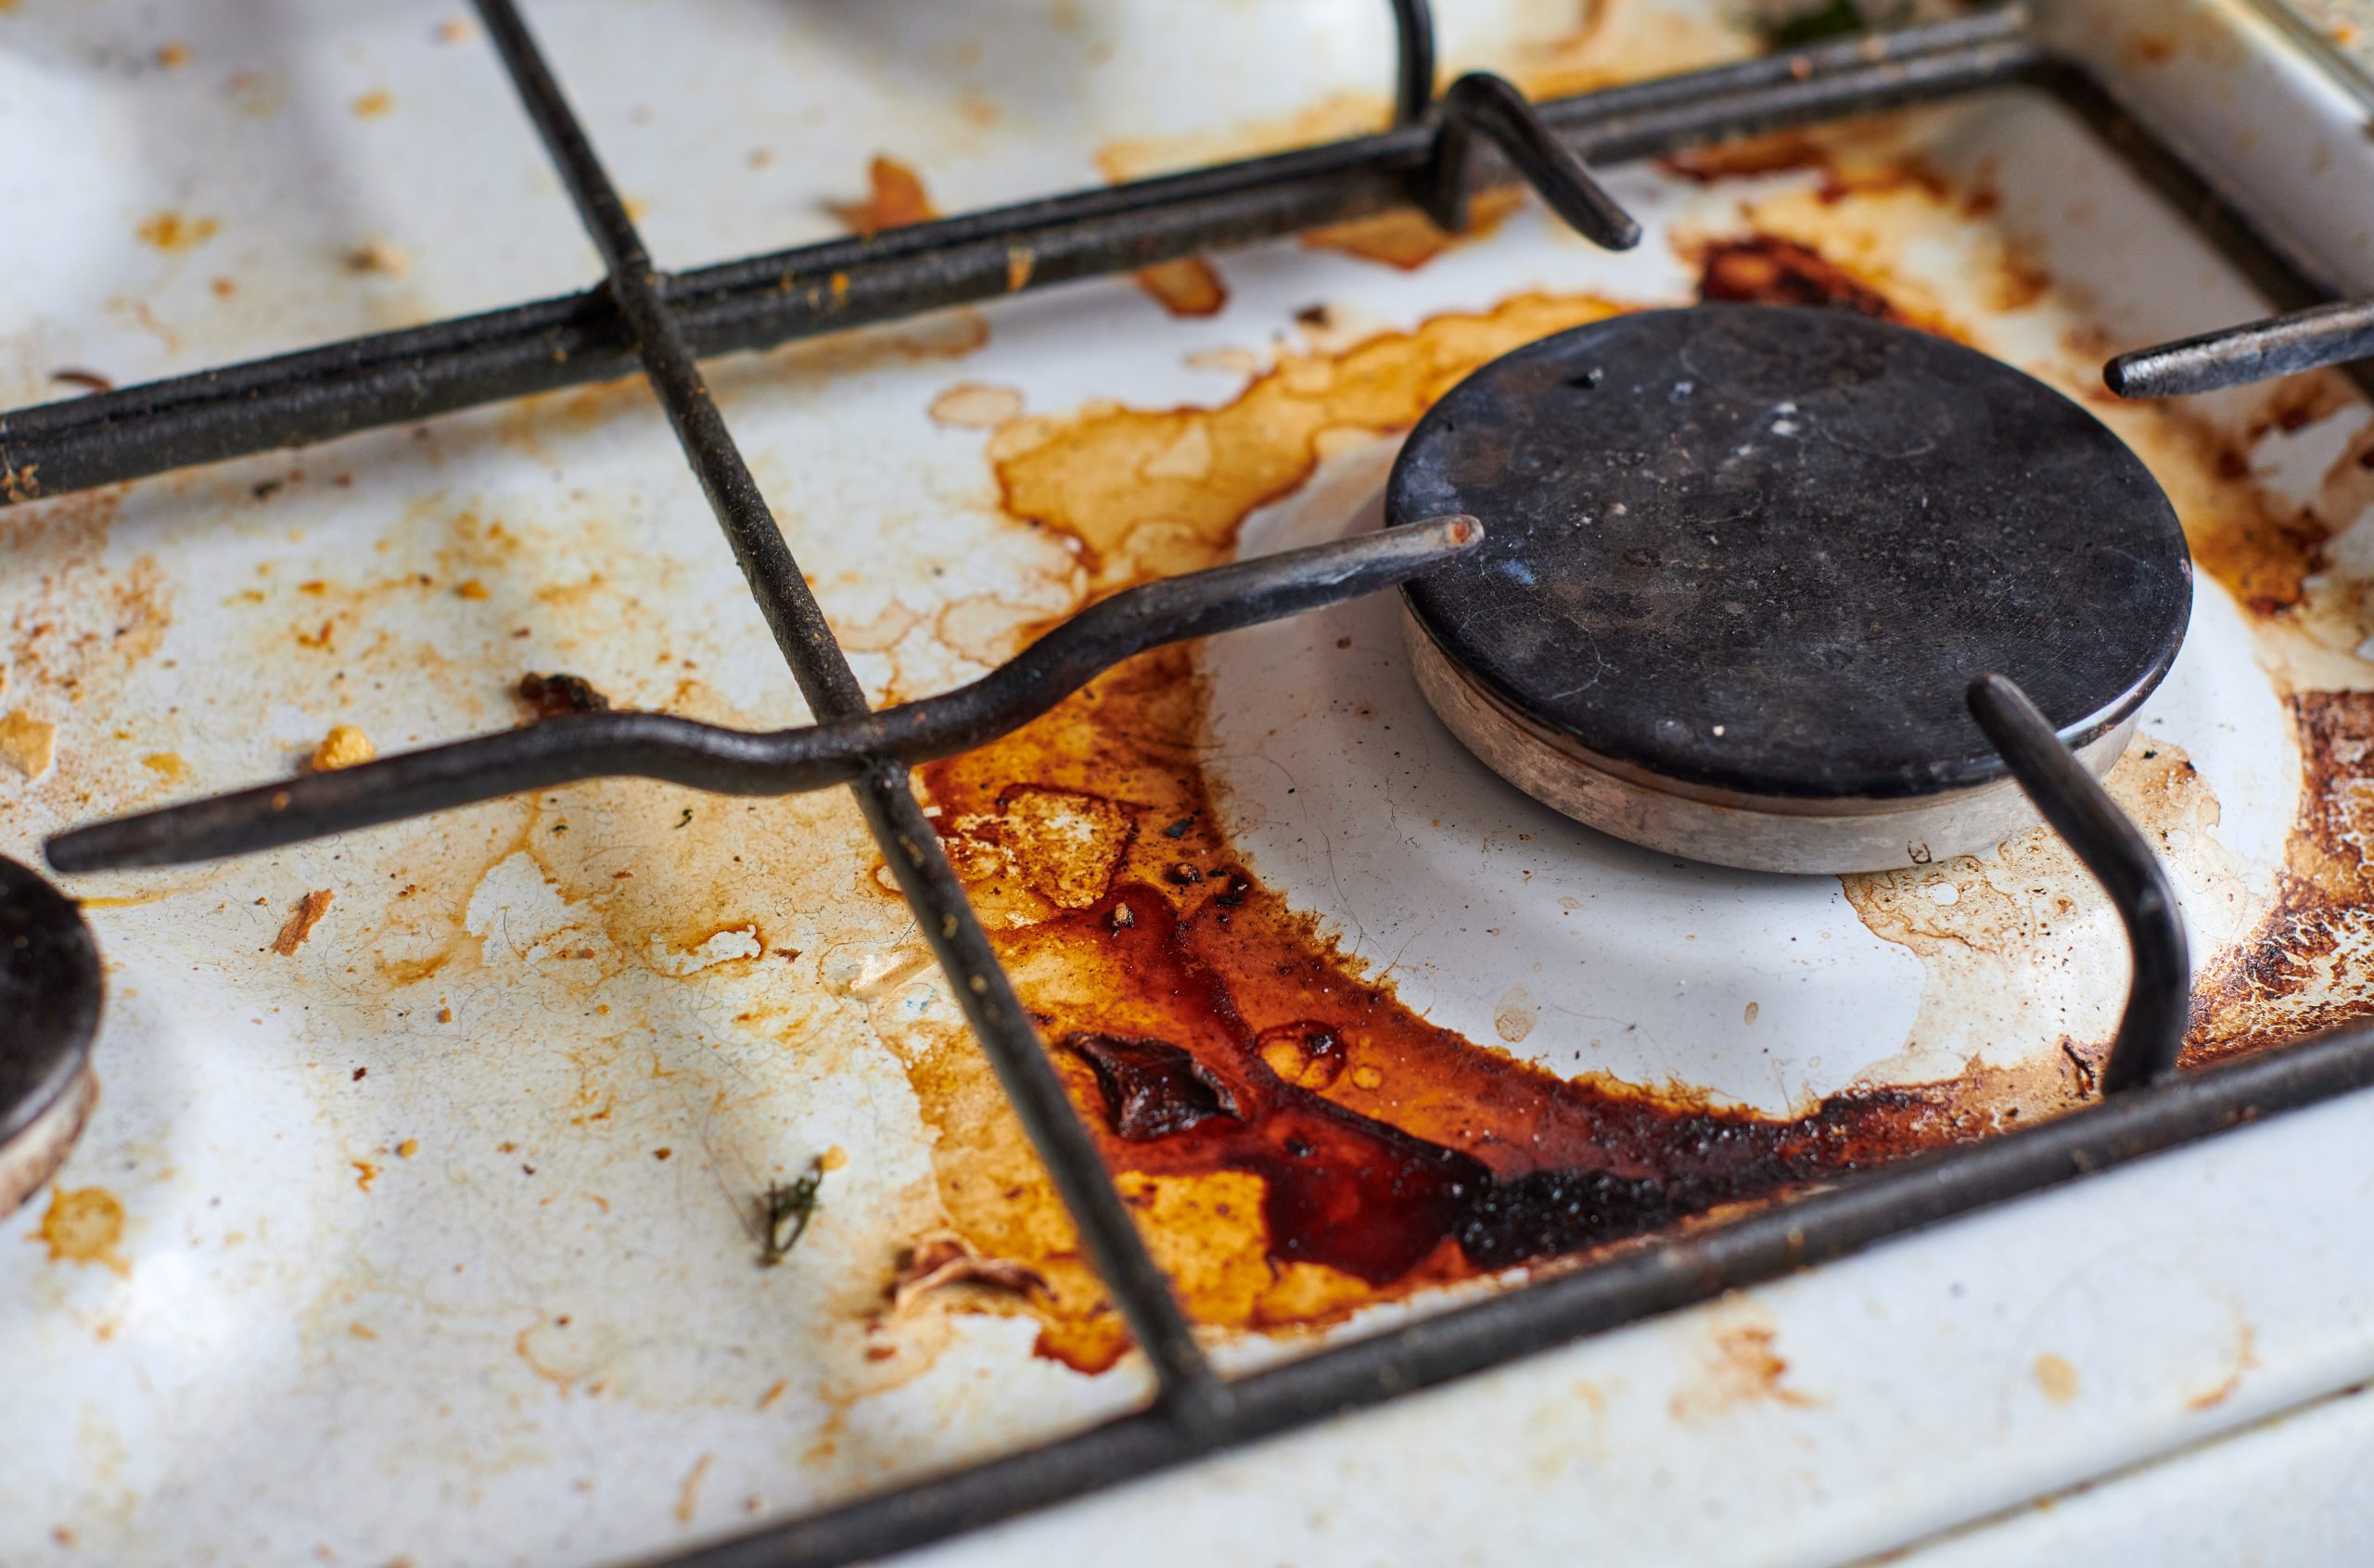 Comment nettoyer une cuisinière : conseils pratiques et instructions étape par étape